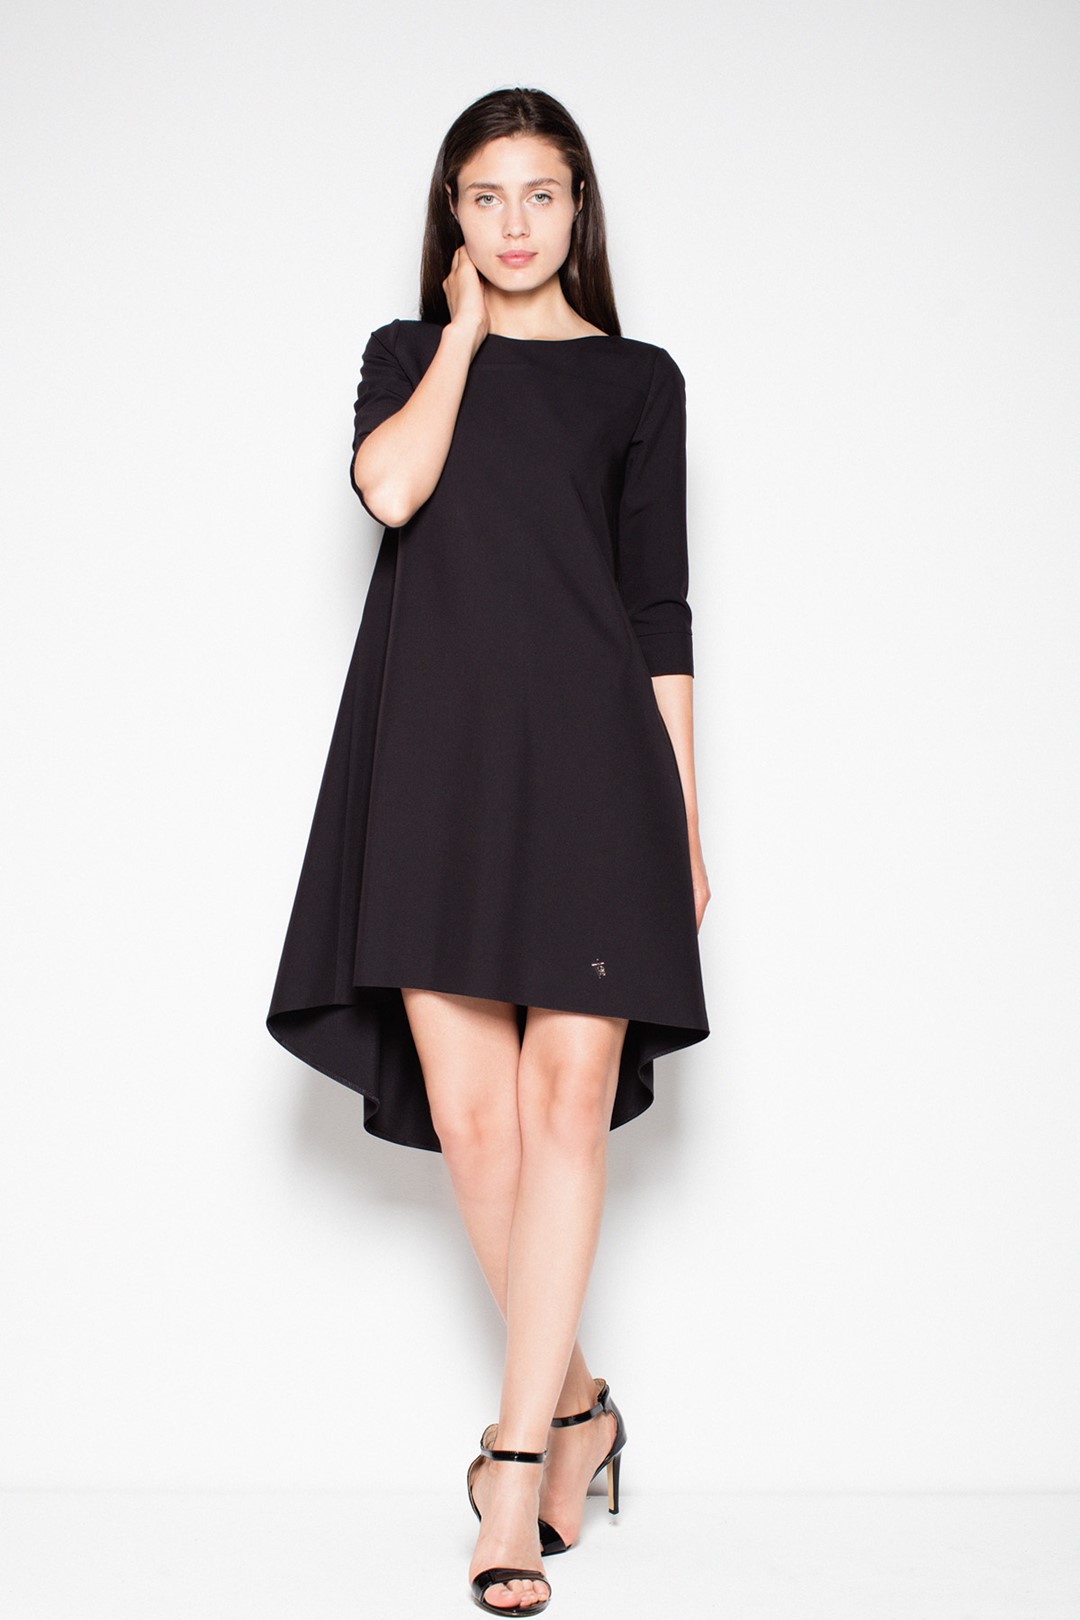 Čierne šaty s asymetrickou sukňou VT073 Black Veľkosť: S